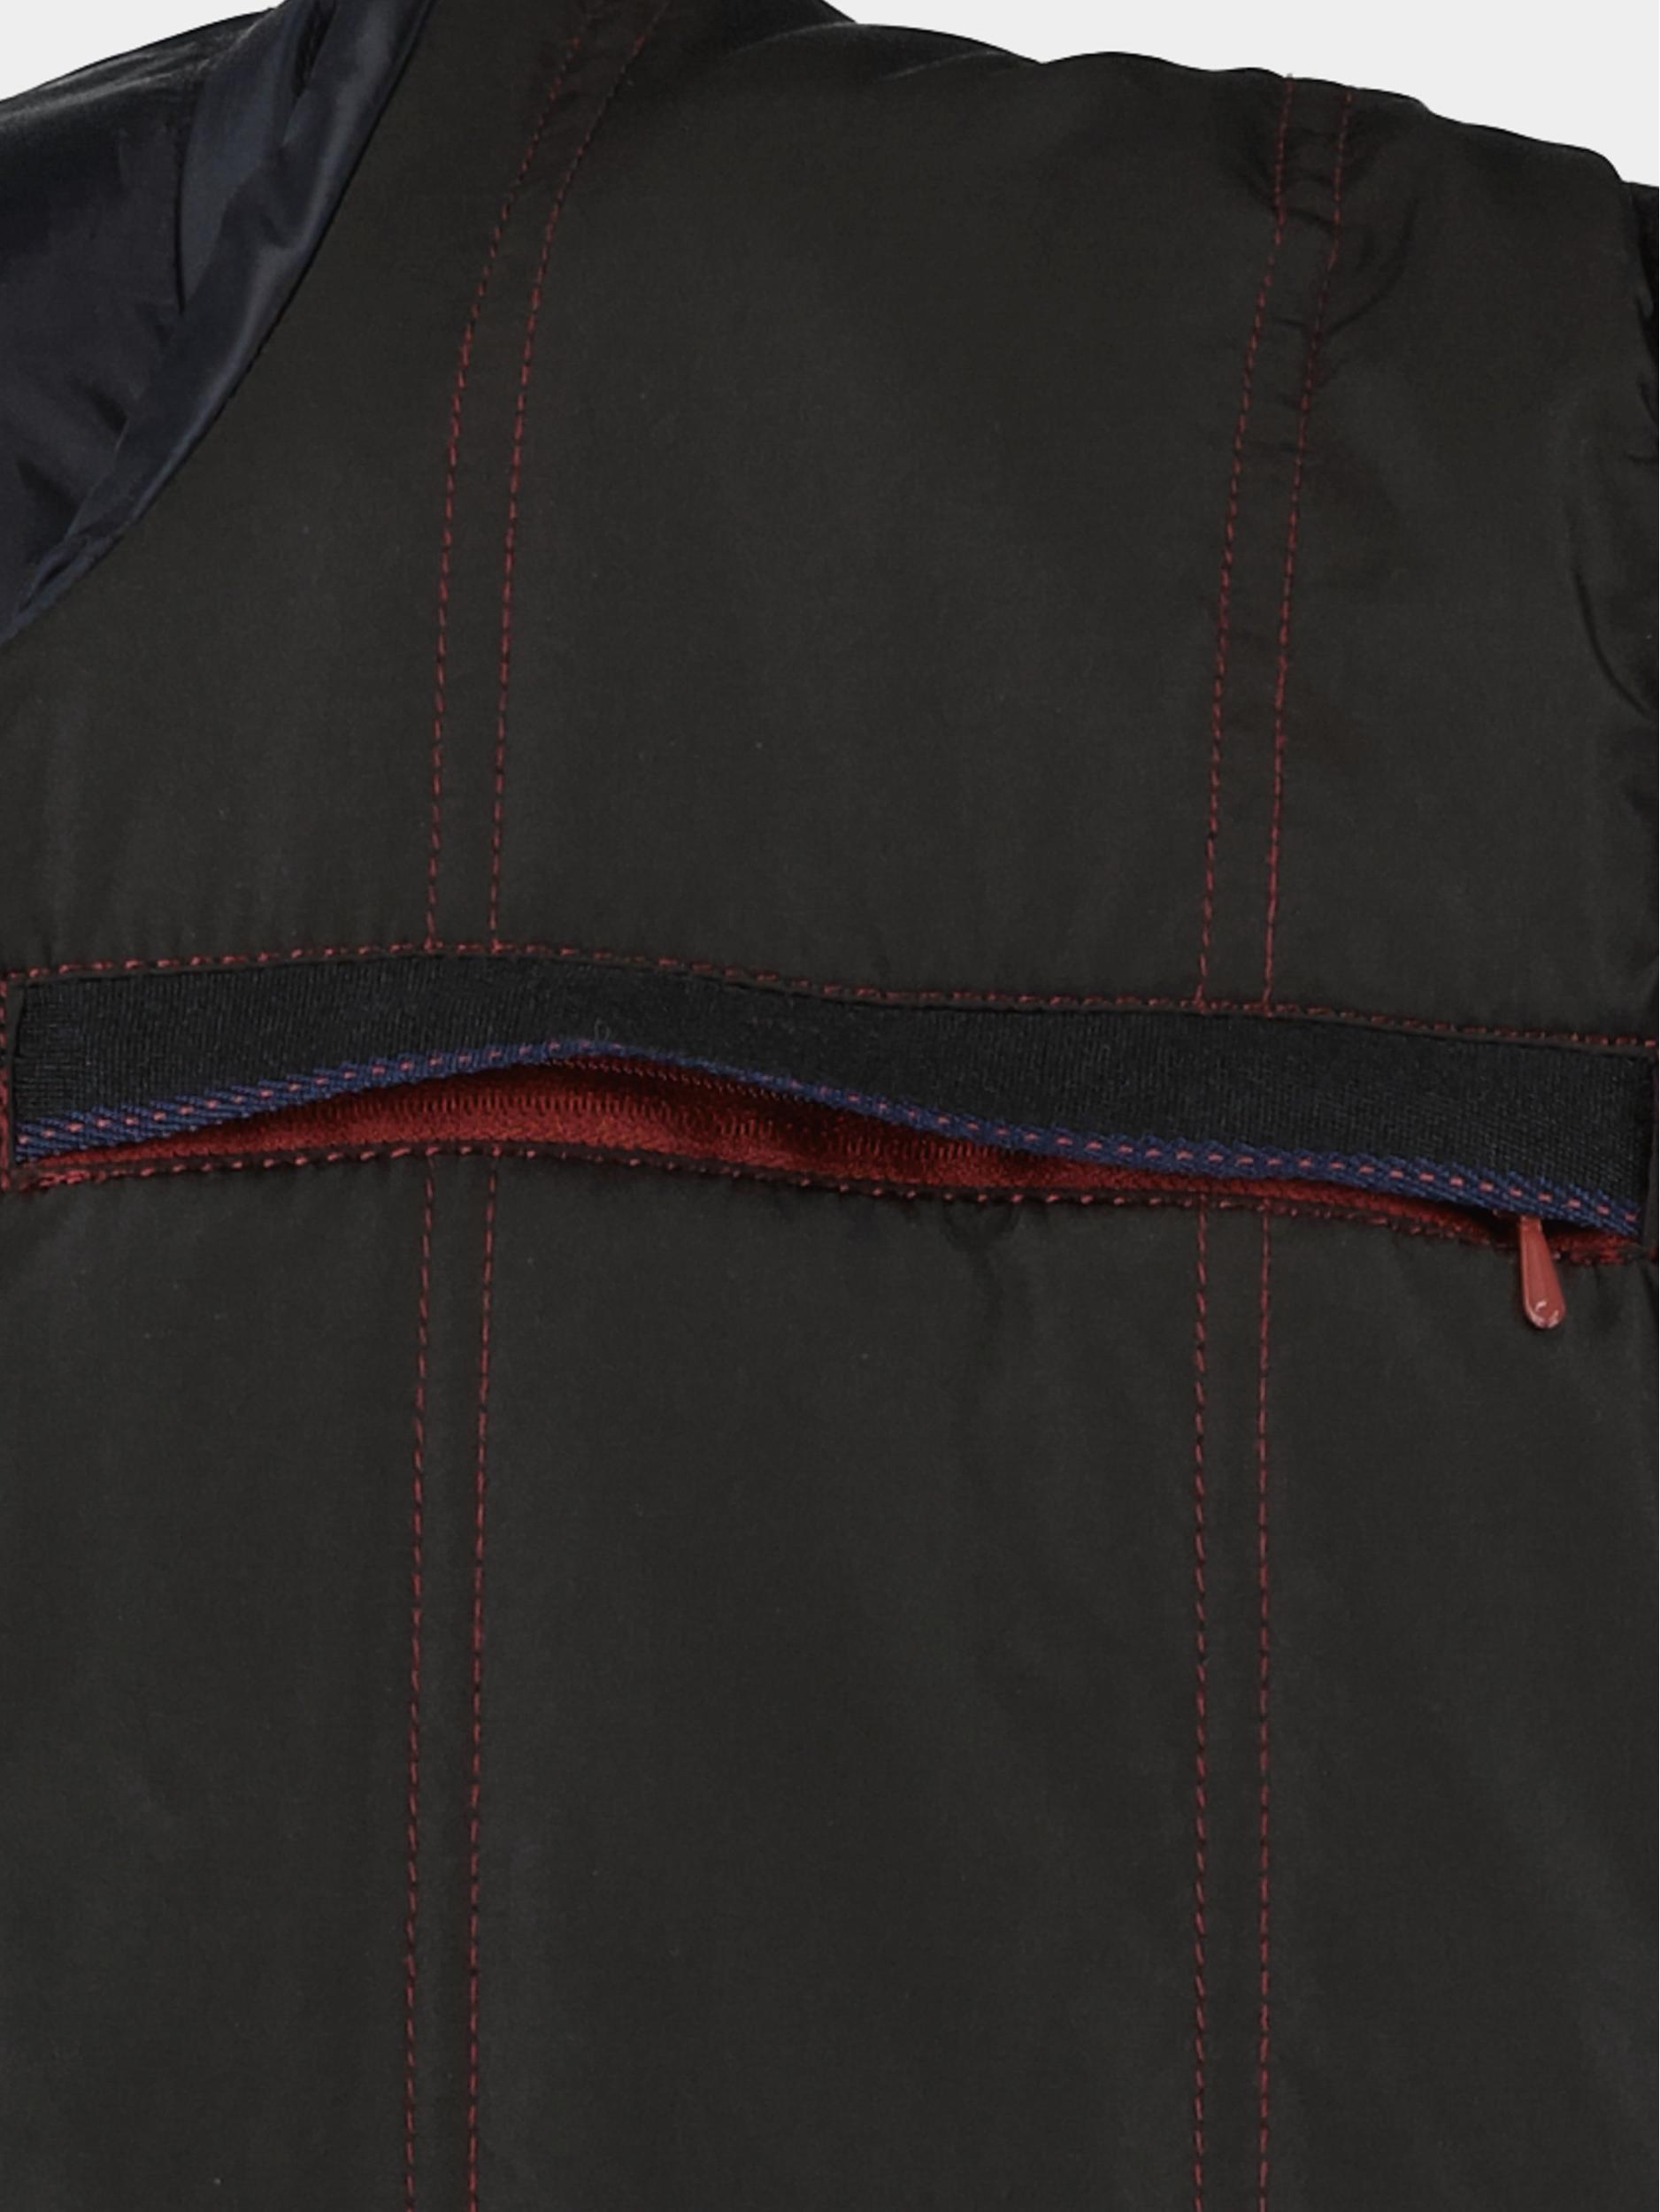 Donders 1860 Wollen Jack Zwart Wool coat 21674/999